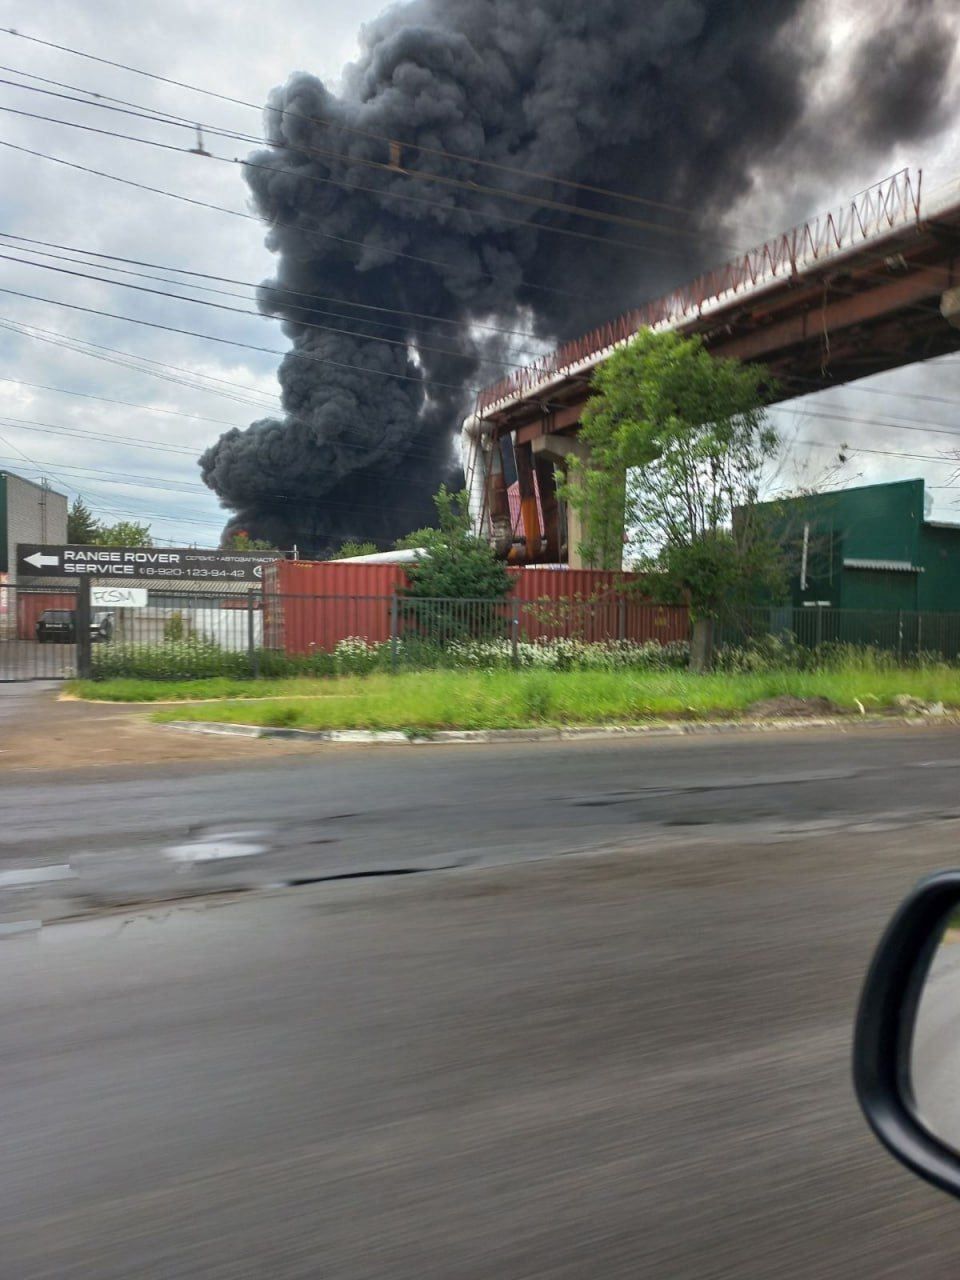 В российком Ярославле вспыхнул мощный пожар на складе, валит черный дым. Фото